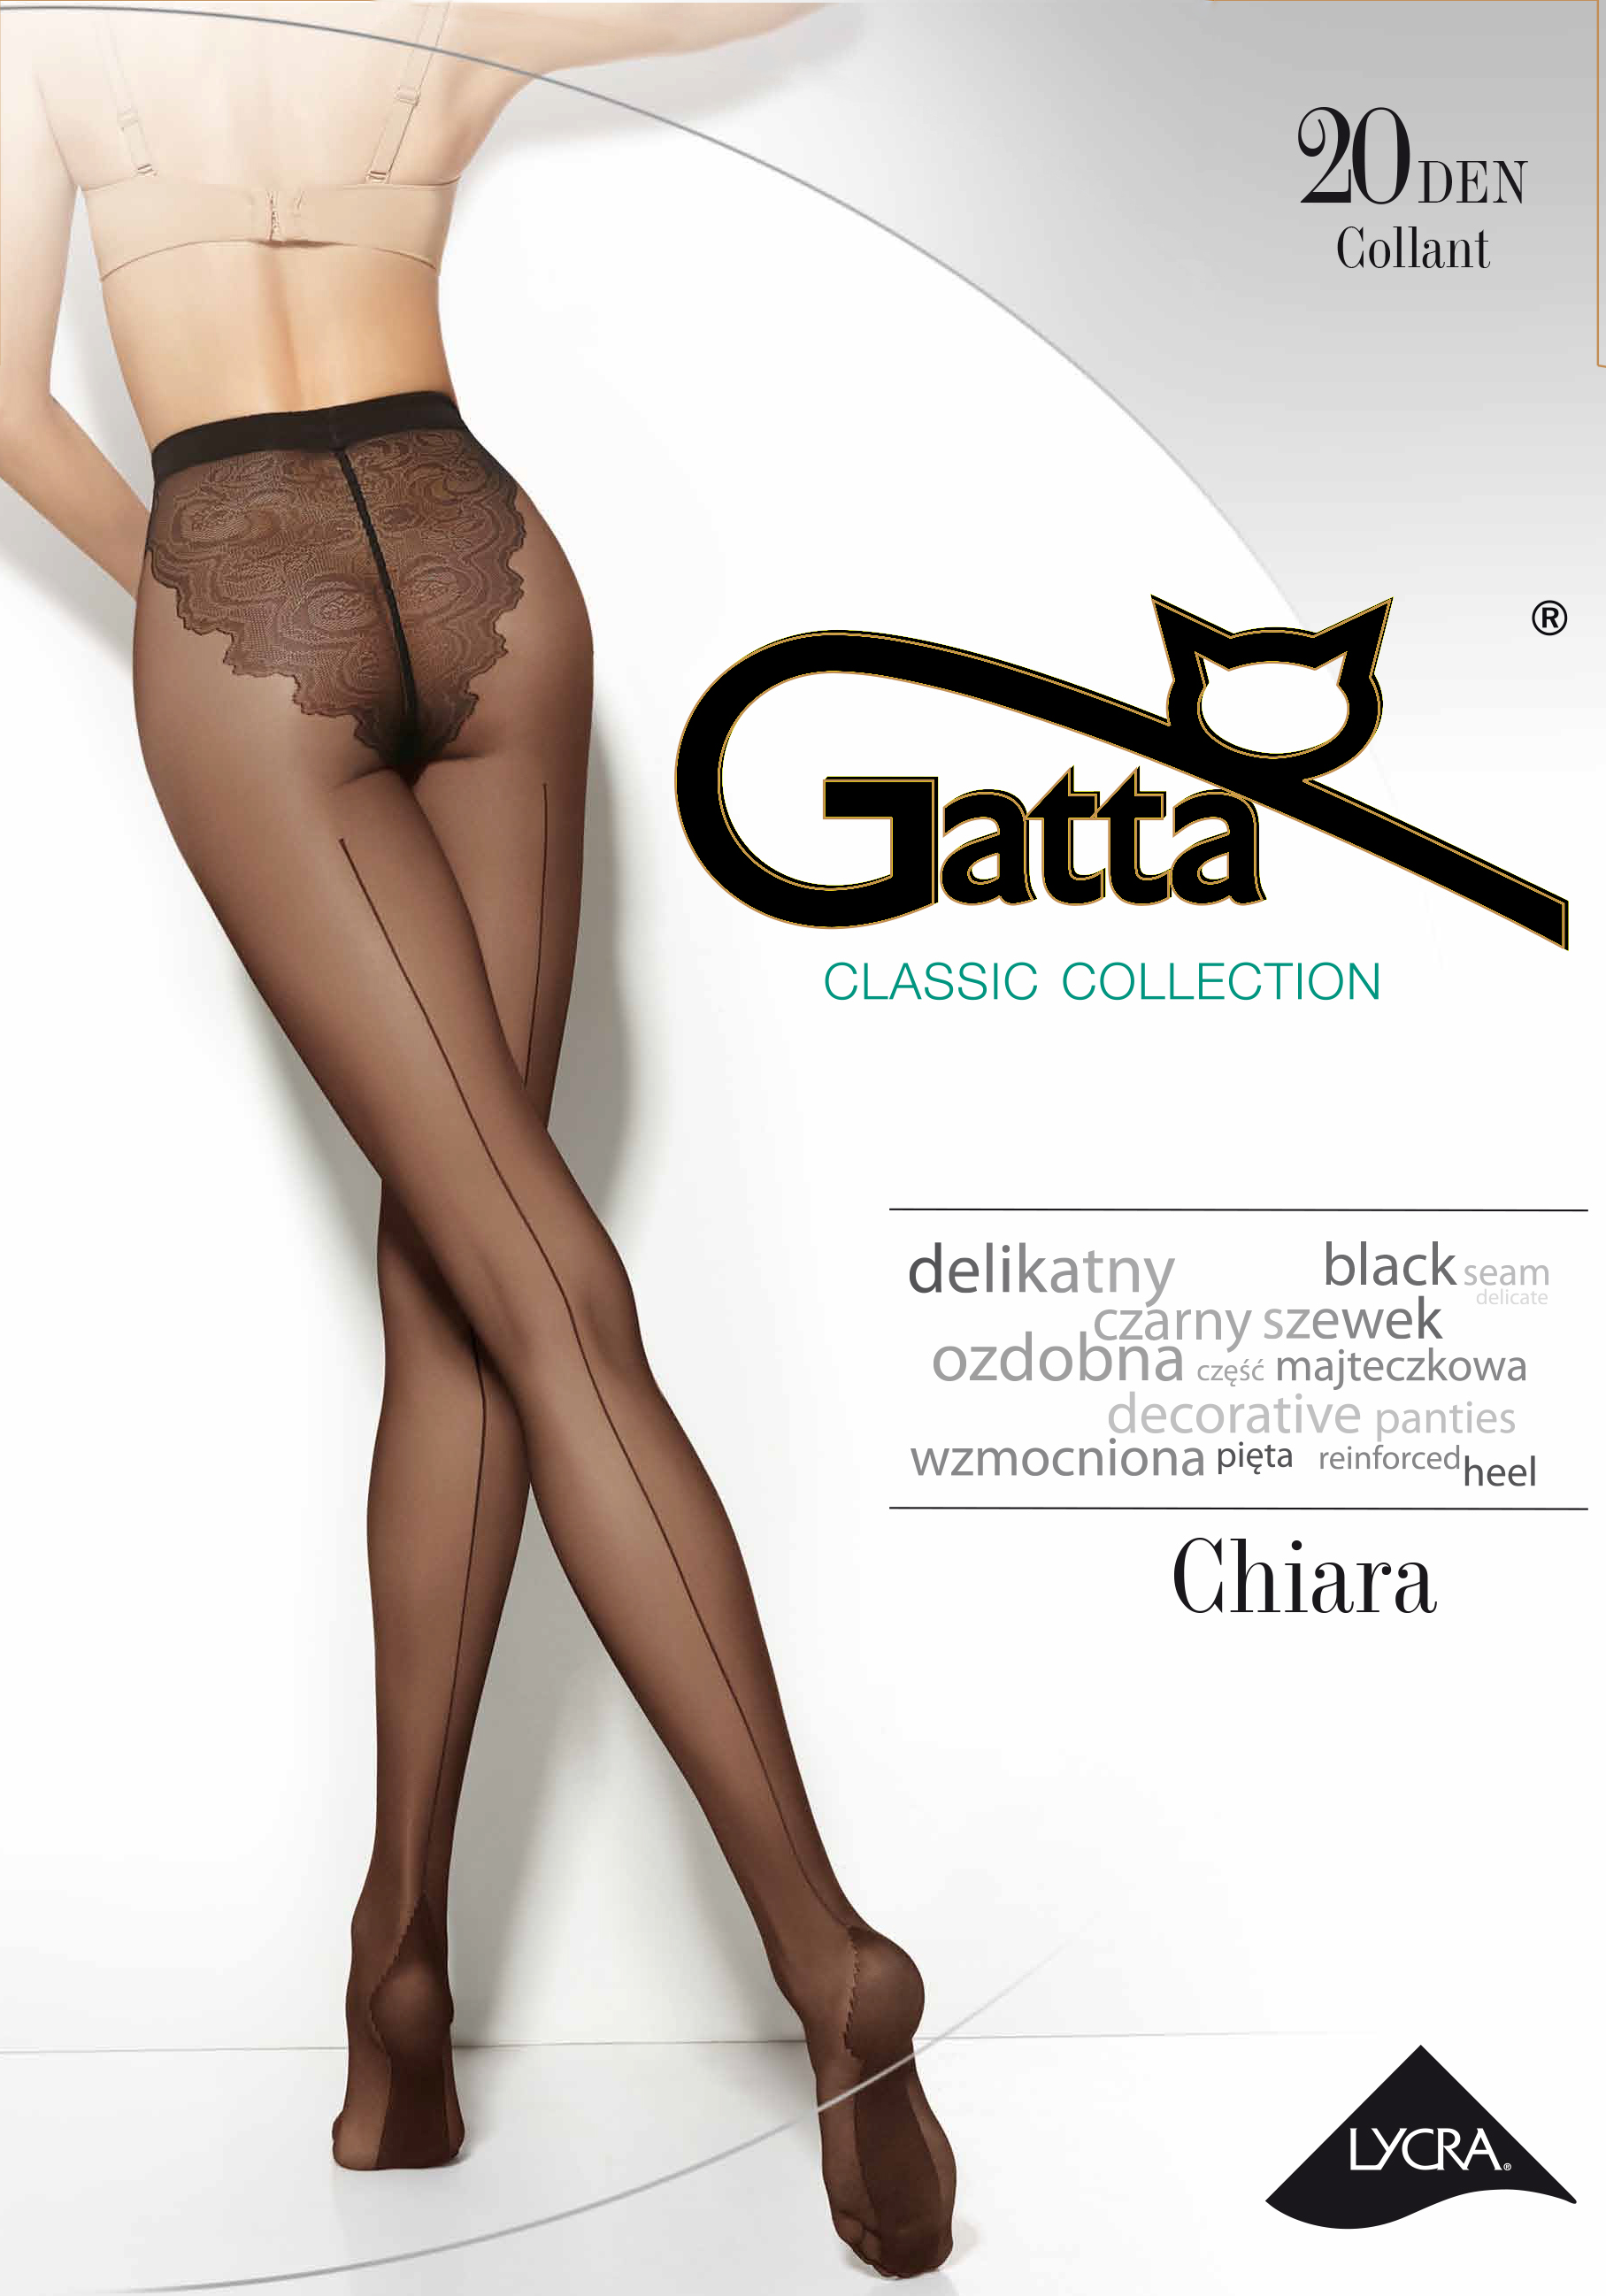 Gatta Chiara z czarnym szwem- DW.bezterminowo